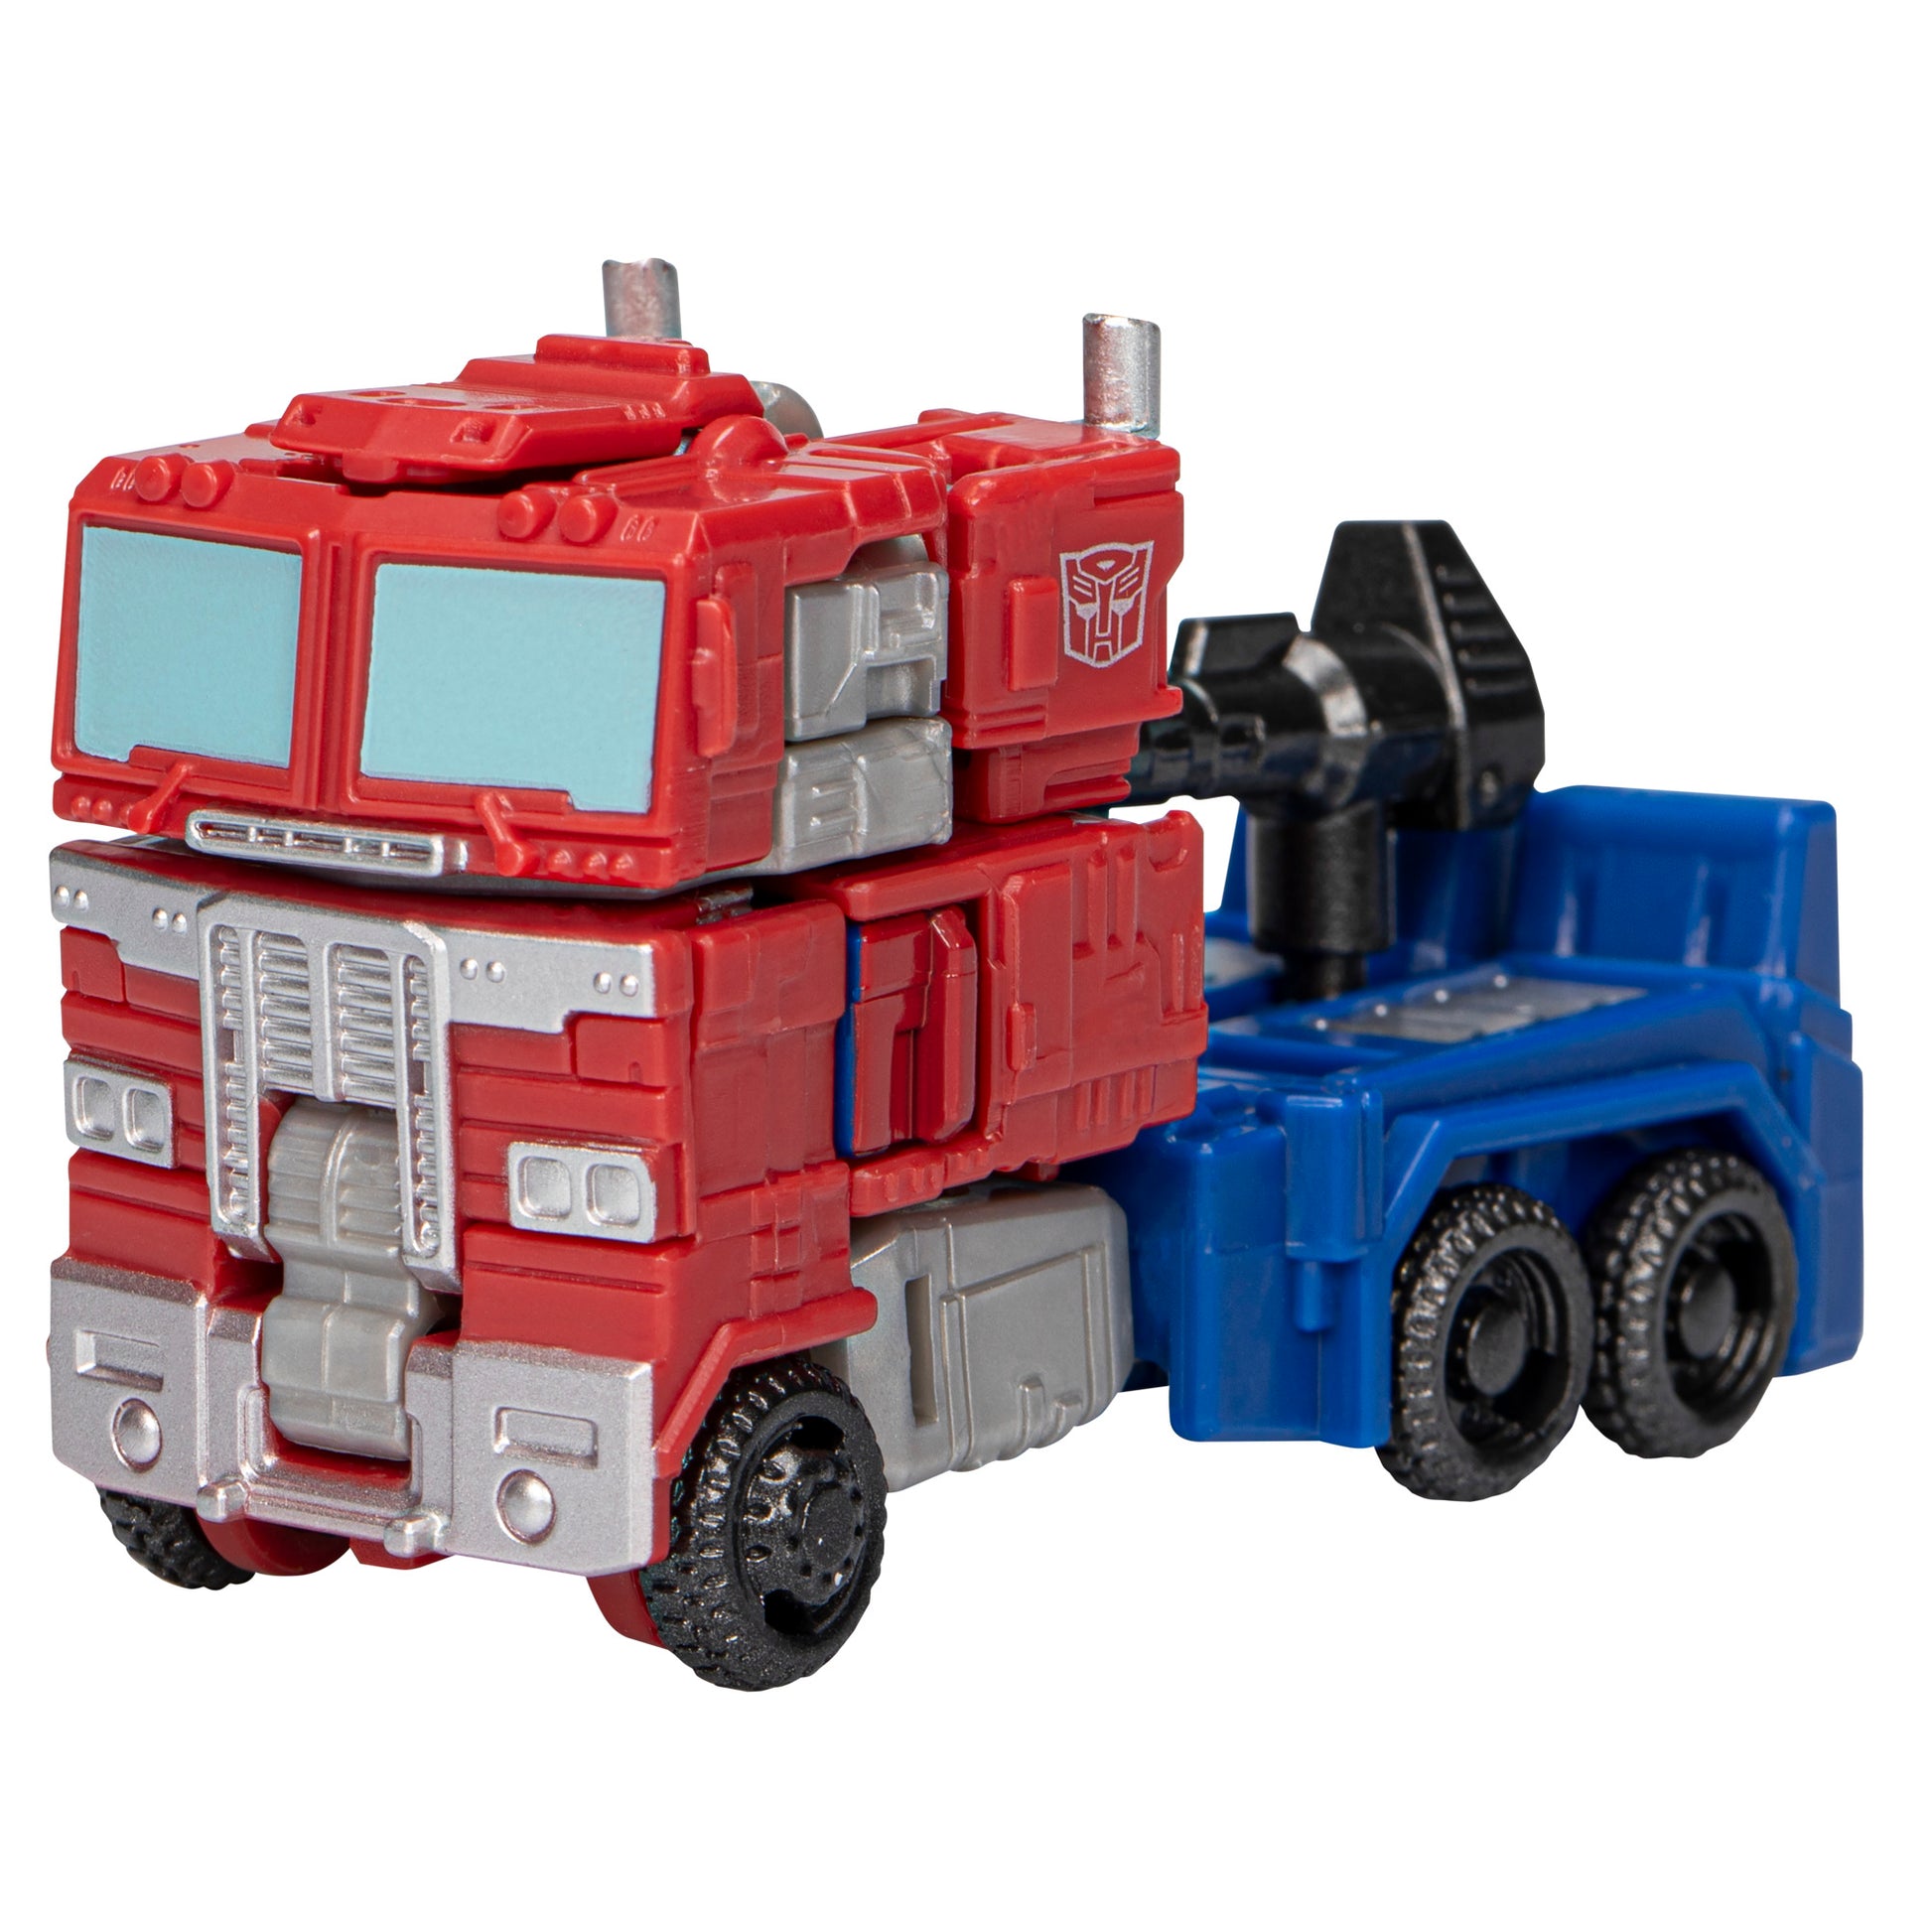 Core class optimus prime transformed in truck - Heretoserveyou